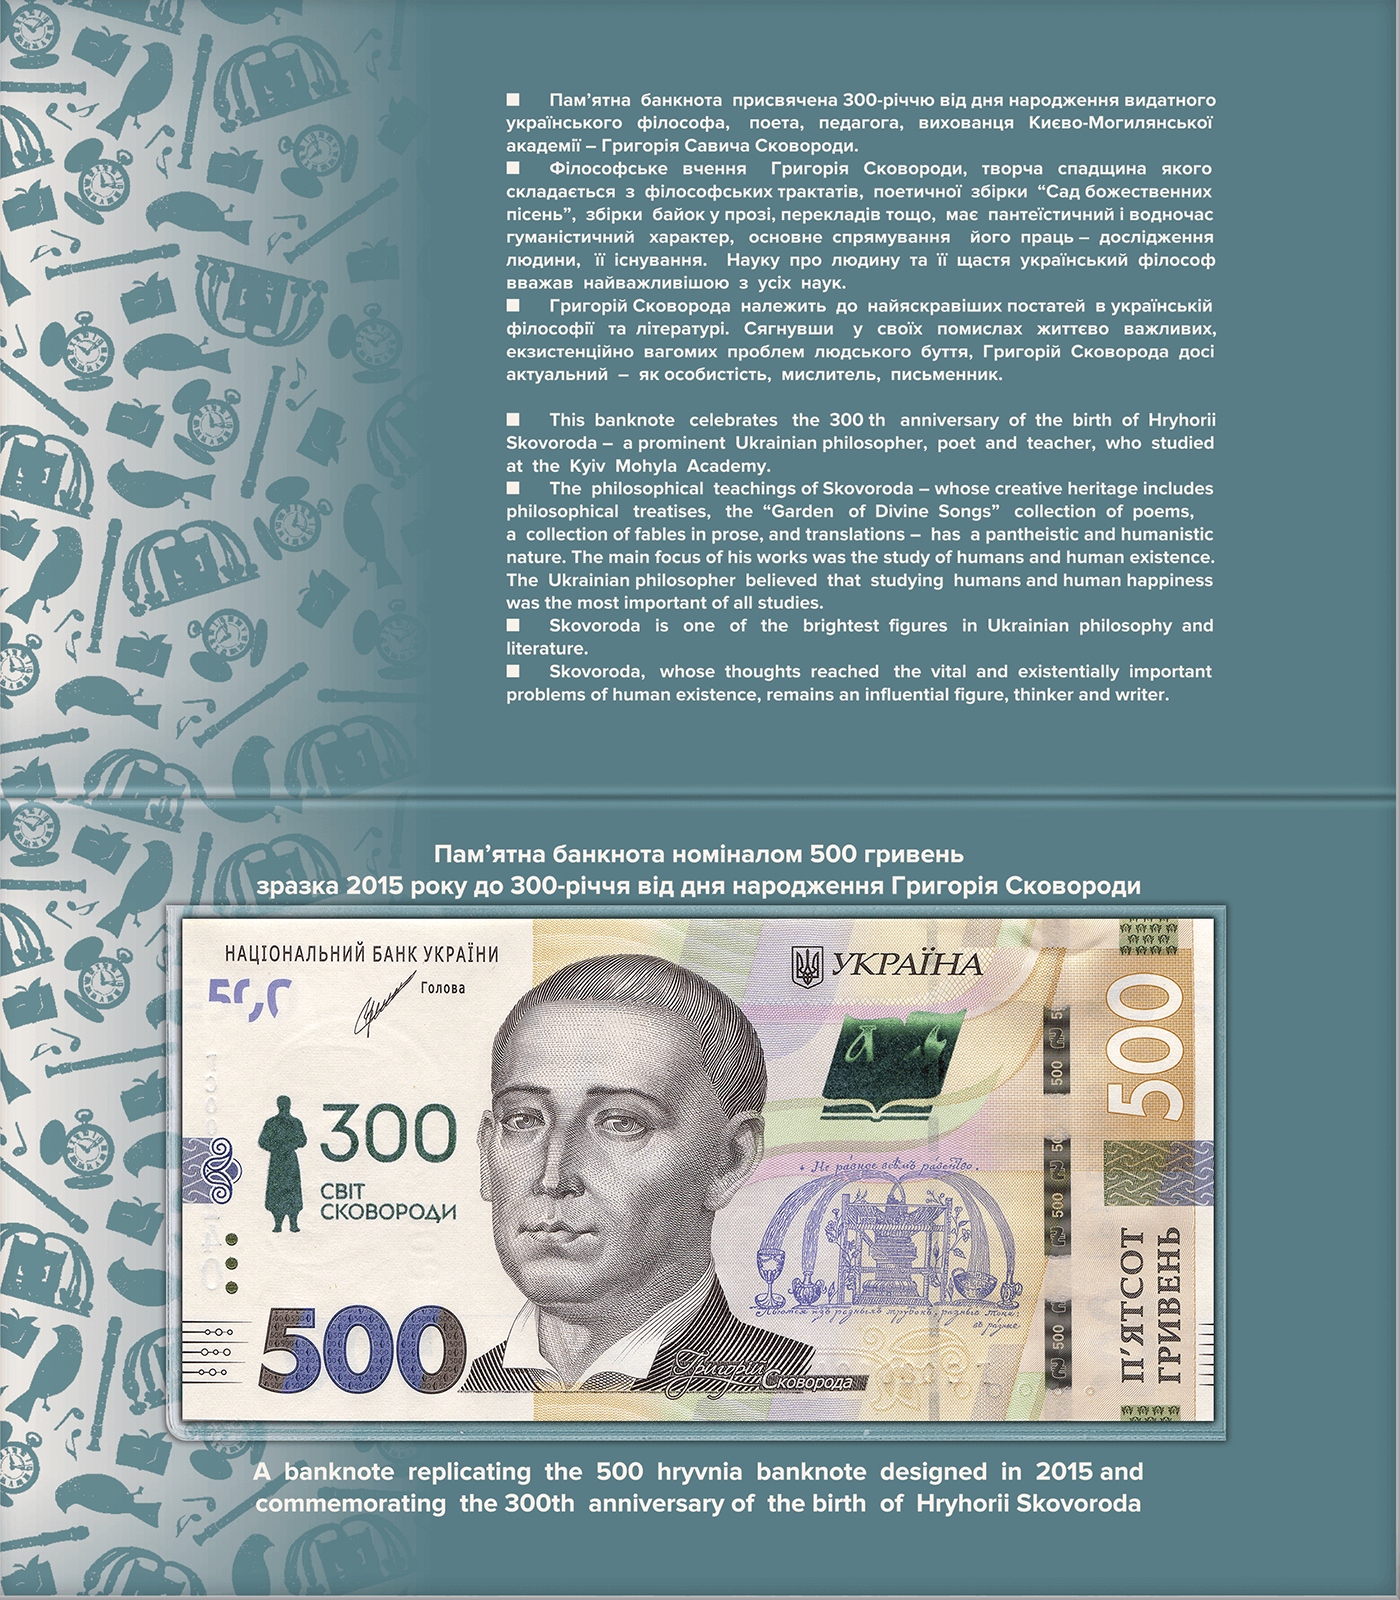 Пам`ятна банкнота номіналом 500 гривень зразка 2015 року до 300-річчя від дня народження Григорія Сковороди (у сувенірній упаковці)
 (реверс)